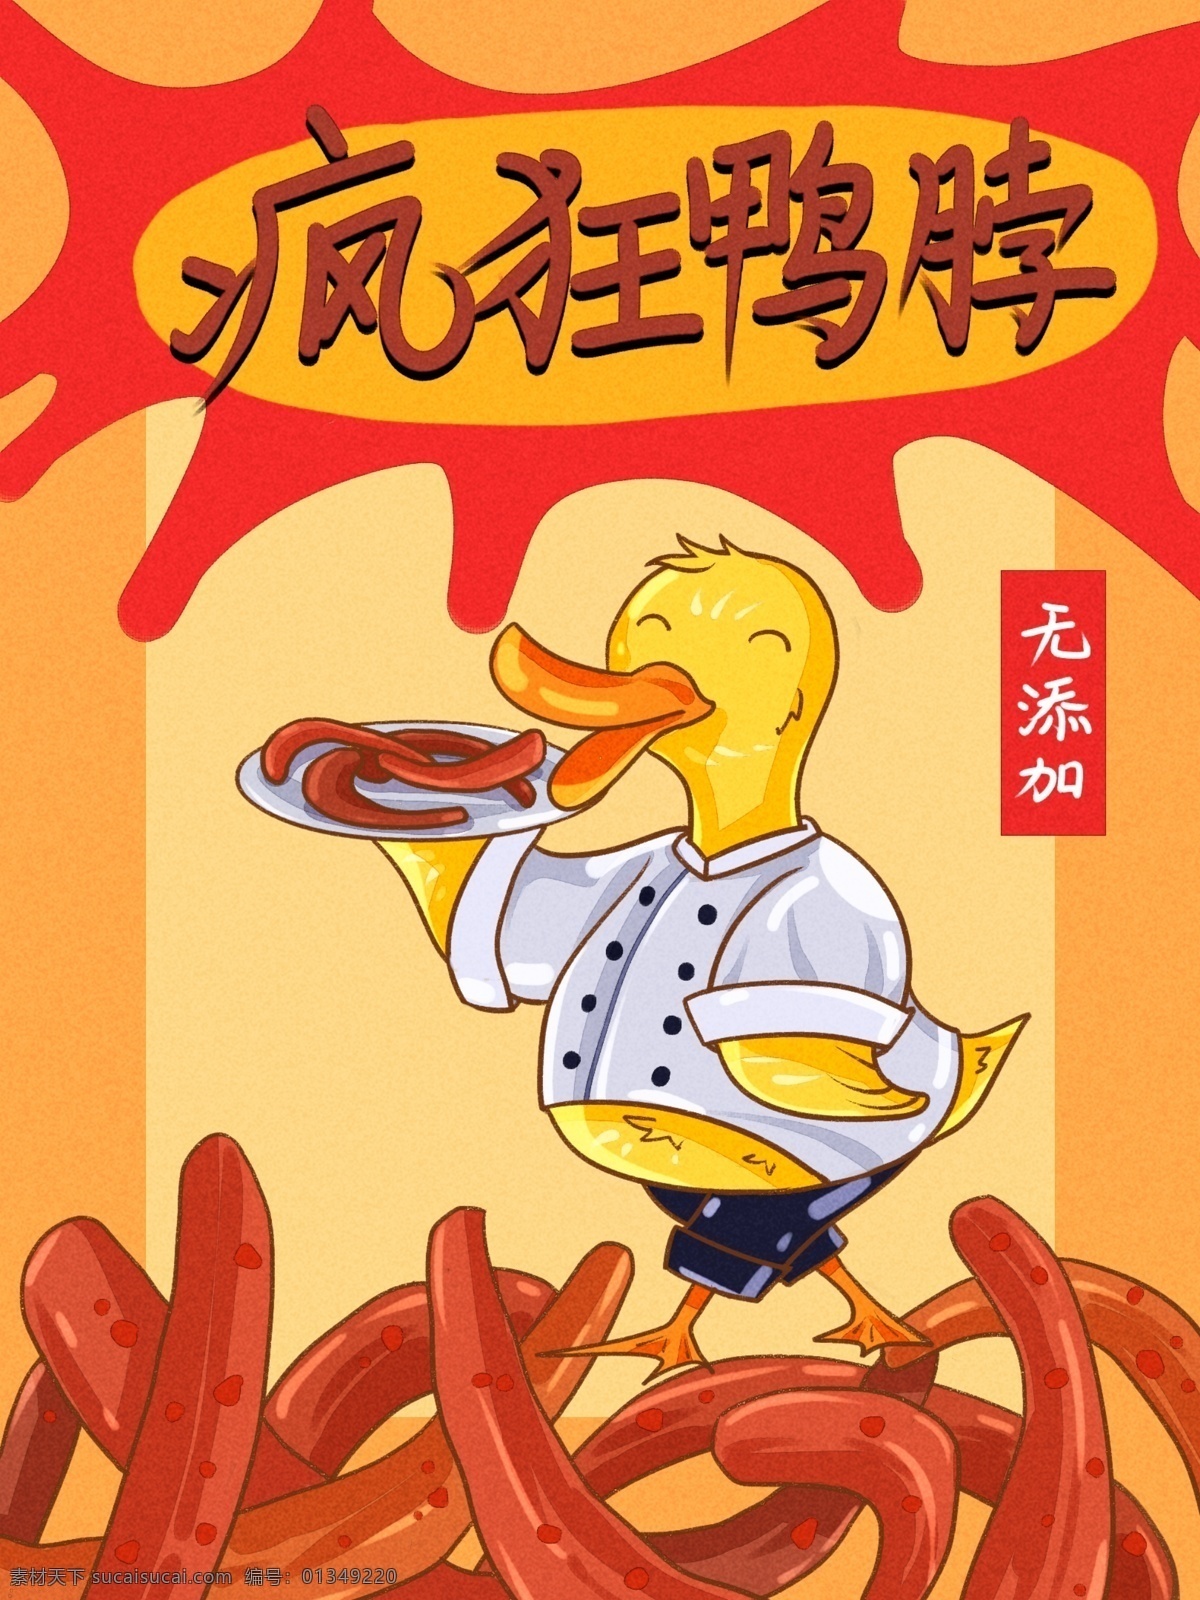 零食 包装 鸭 脖 拟人化 卡通 描 可爱 鸭子 零食包装 鸭脖 拟人 厨师服 端盘子 文案